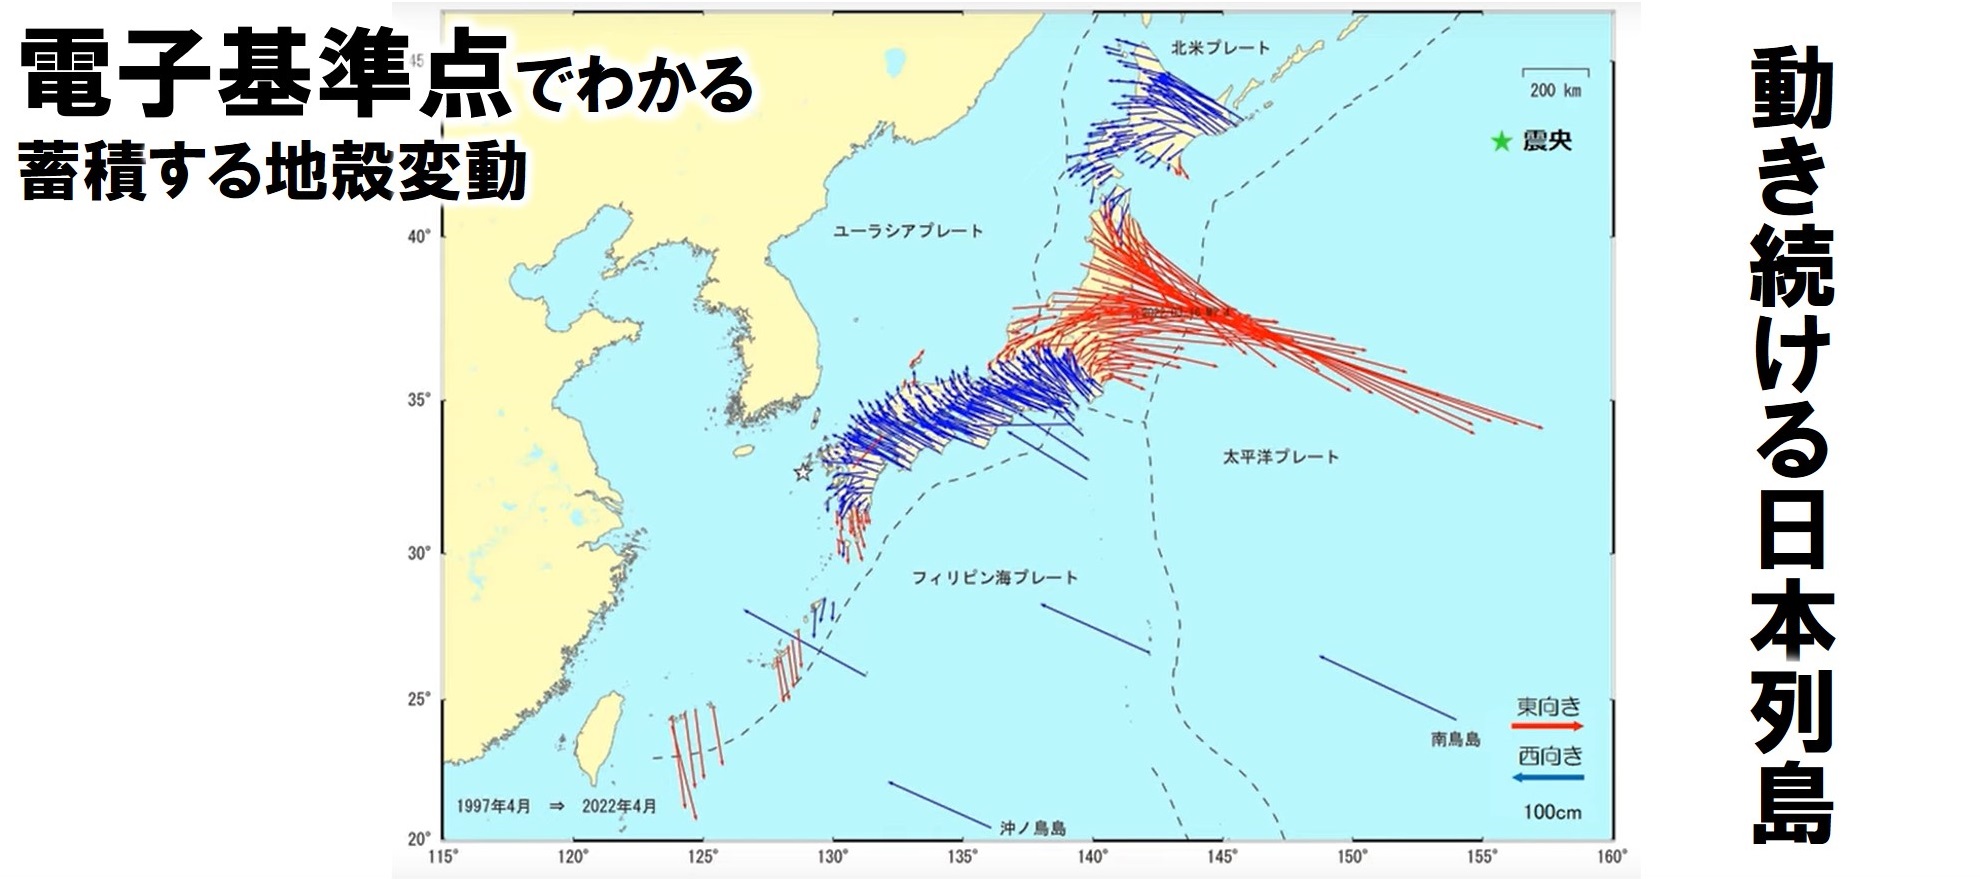 日本列島の地図に矢印が描かれています。東北地方には東向きの矢印が長く描かれ、地震によって地面が大きく東向きに移動したことを示しています。